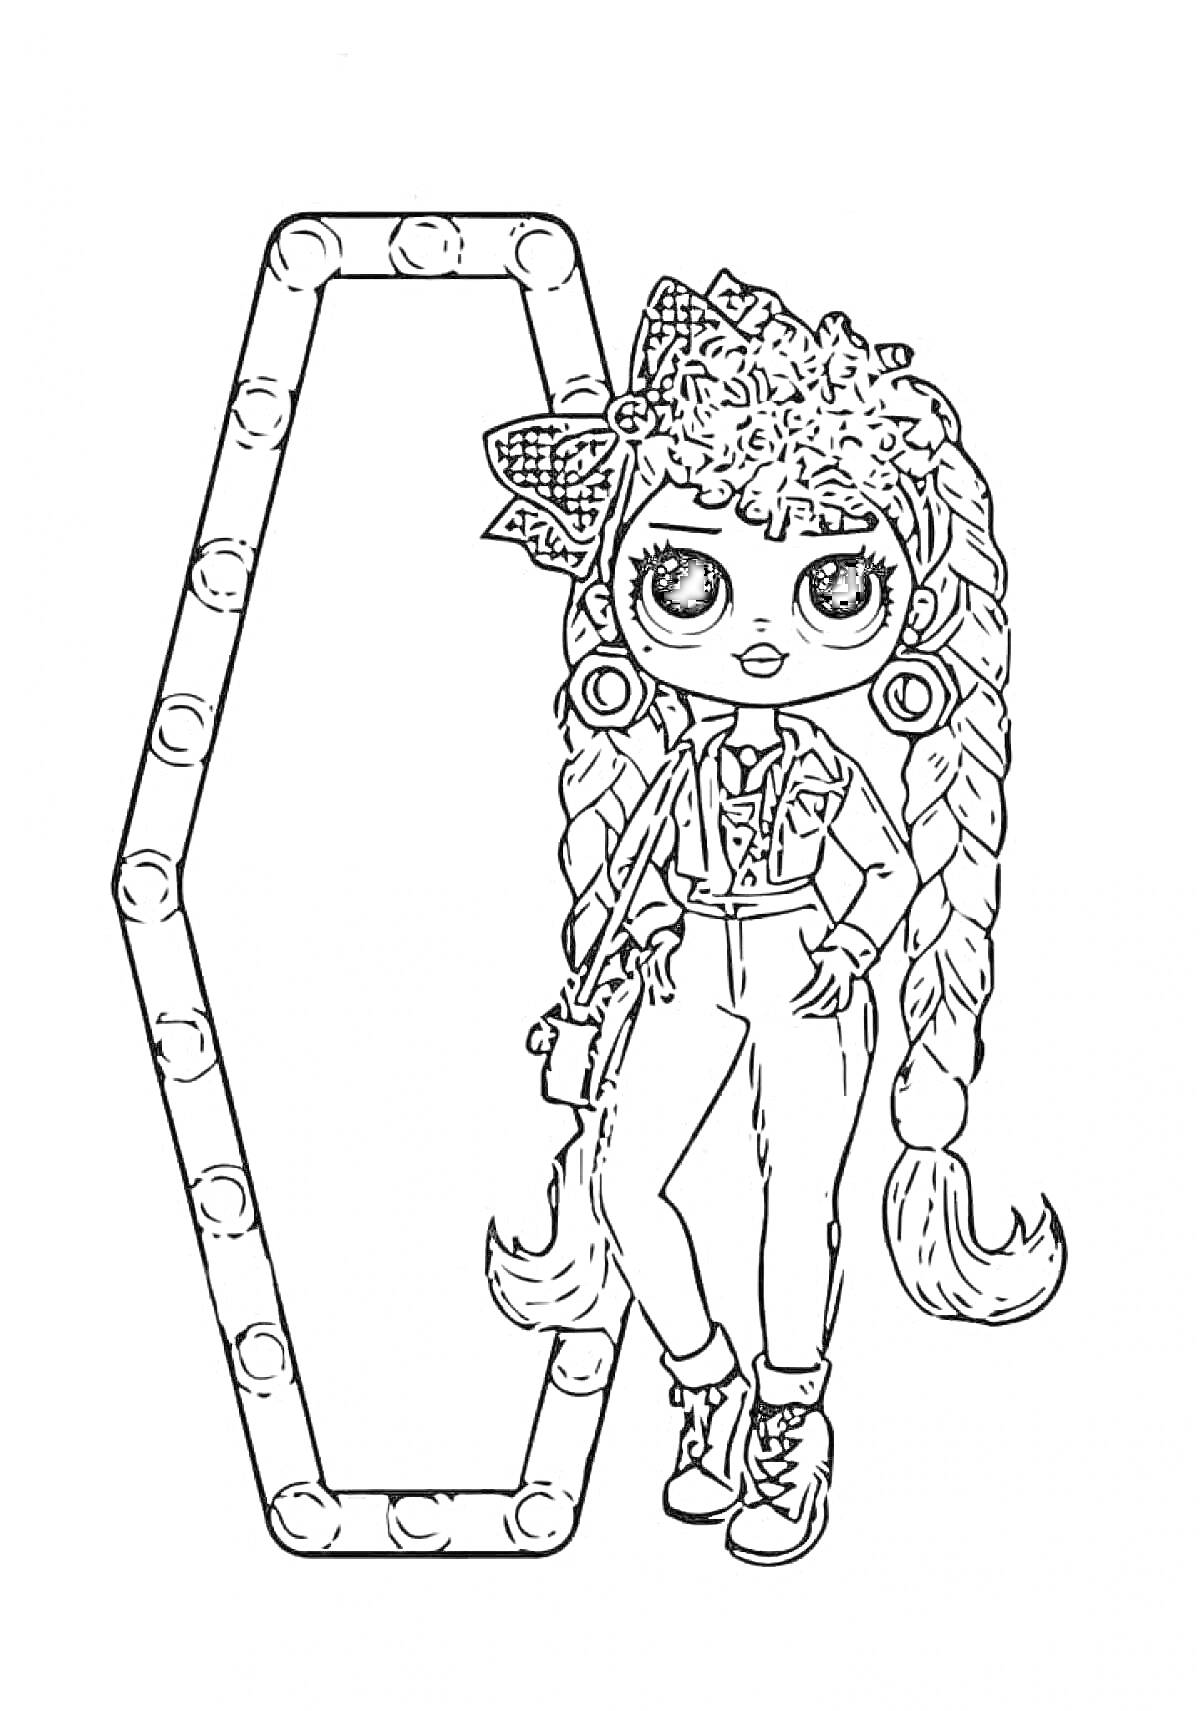 кукла LOL OMG с двухслойными косами и большим бантом на голове, позирующая перед зеркалом с лампочками, одета в джинсовый комбинезон, блузку с длинным рукавом и ботинки